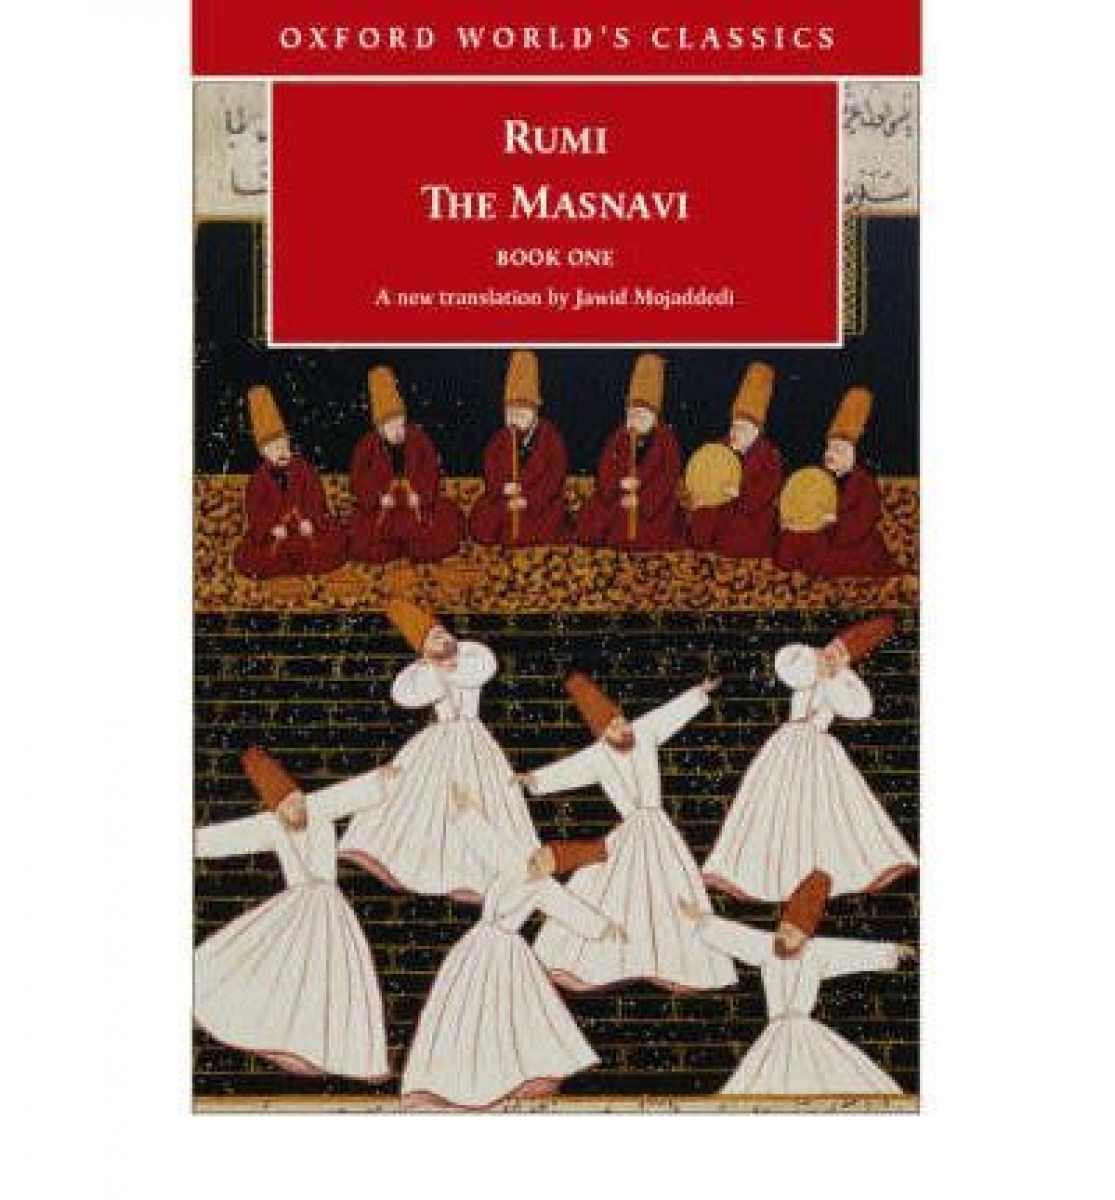 Rumi The Masnavi, Book 1 